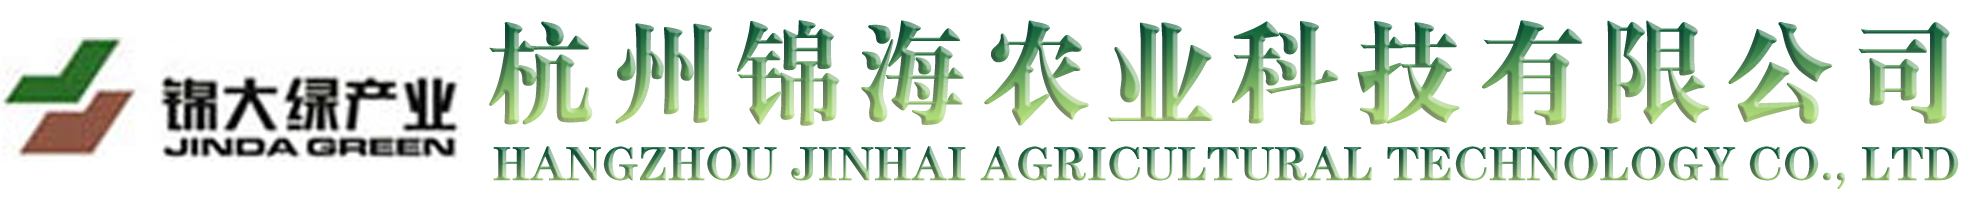 杭州锦海农业科技有限公司